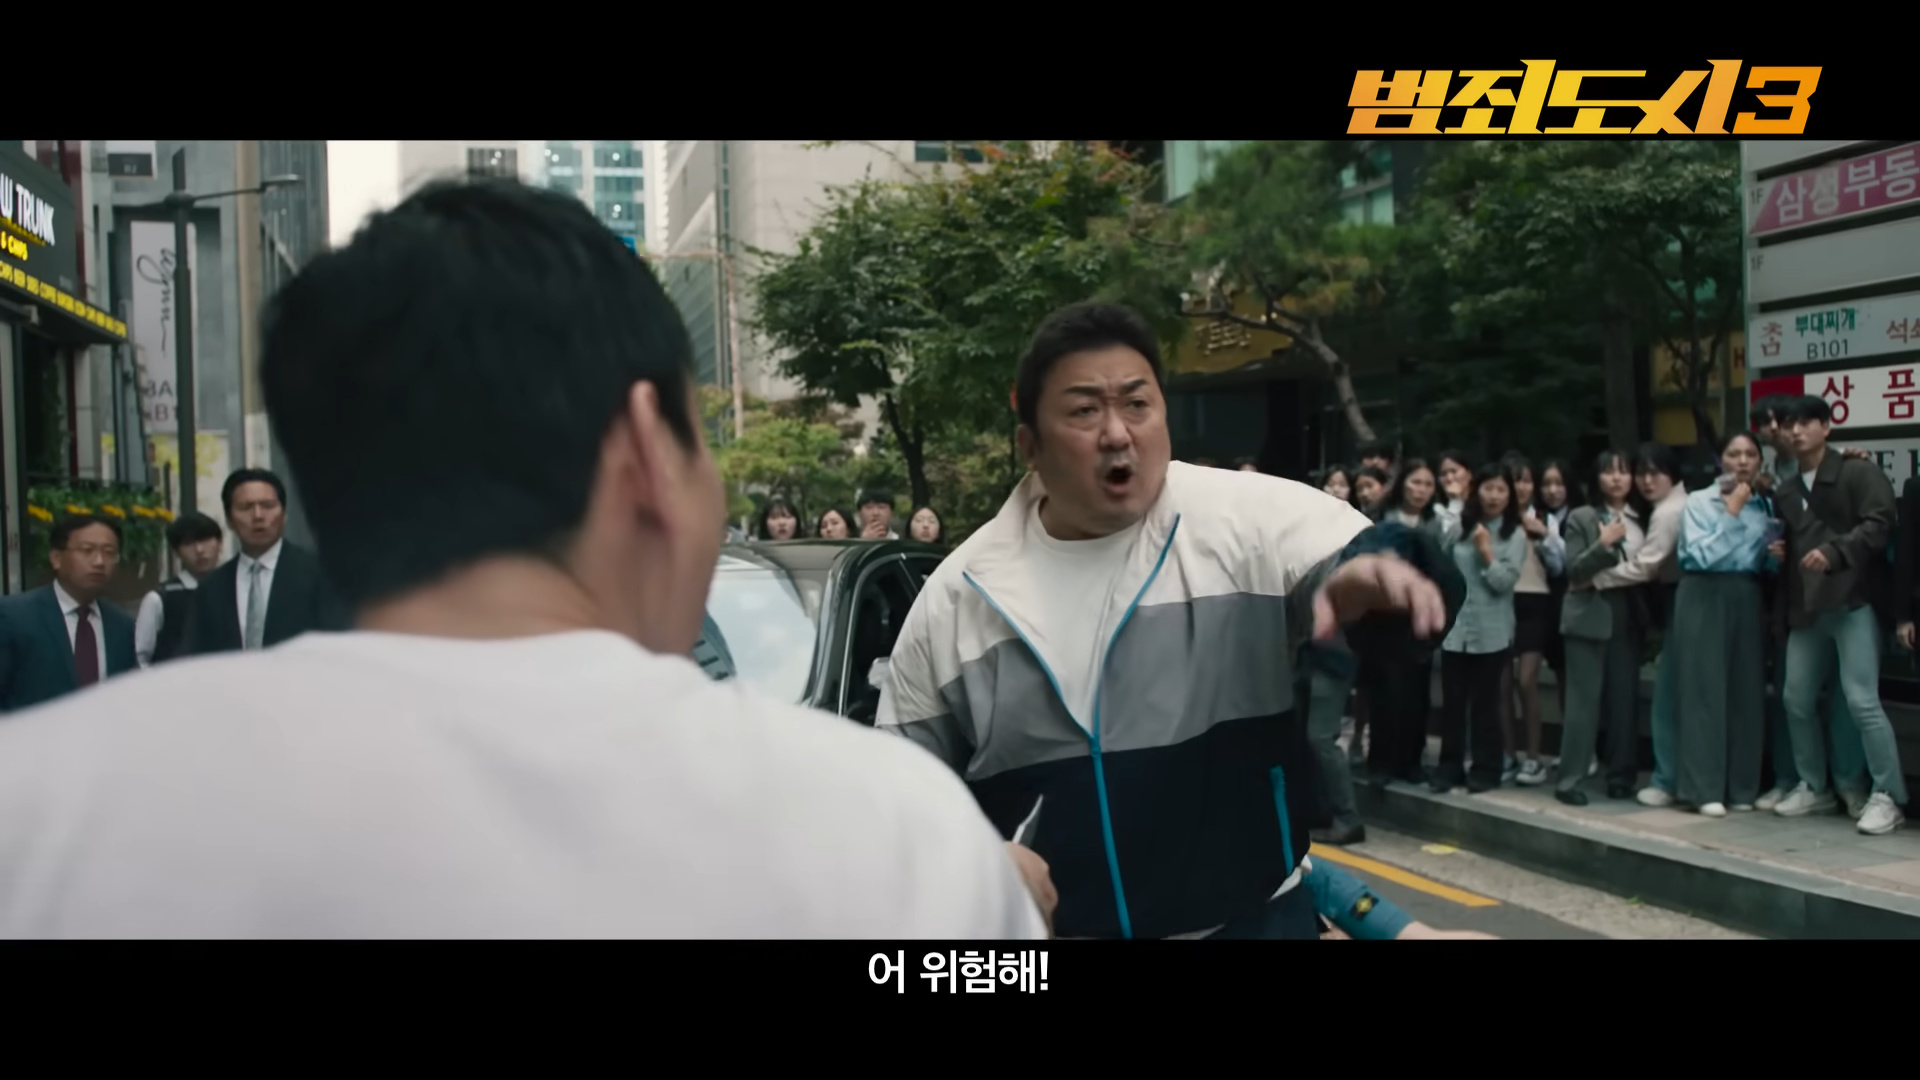 【影視動漫】馬東錫《犯罪都市3》先導預告 5.31韓國上映-第0張